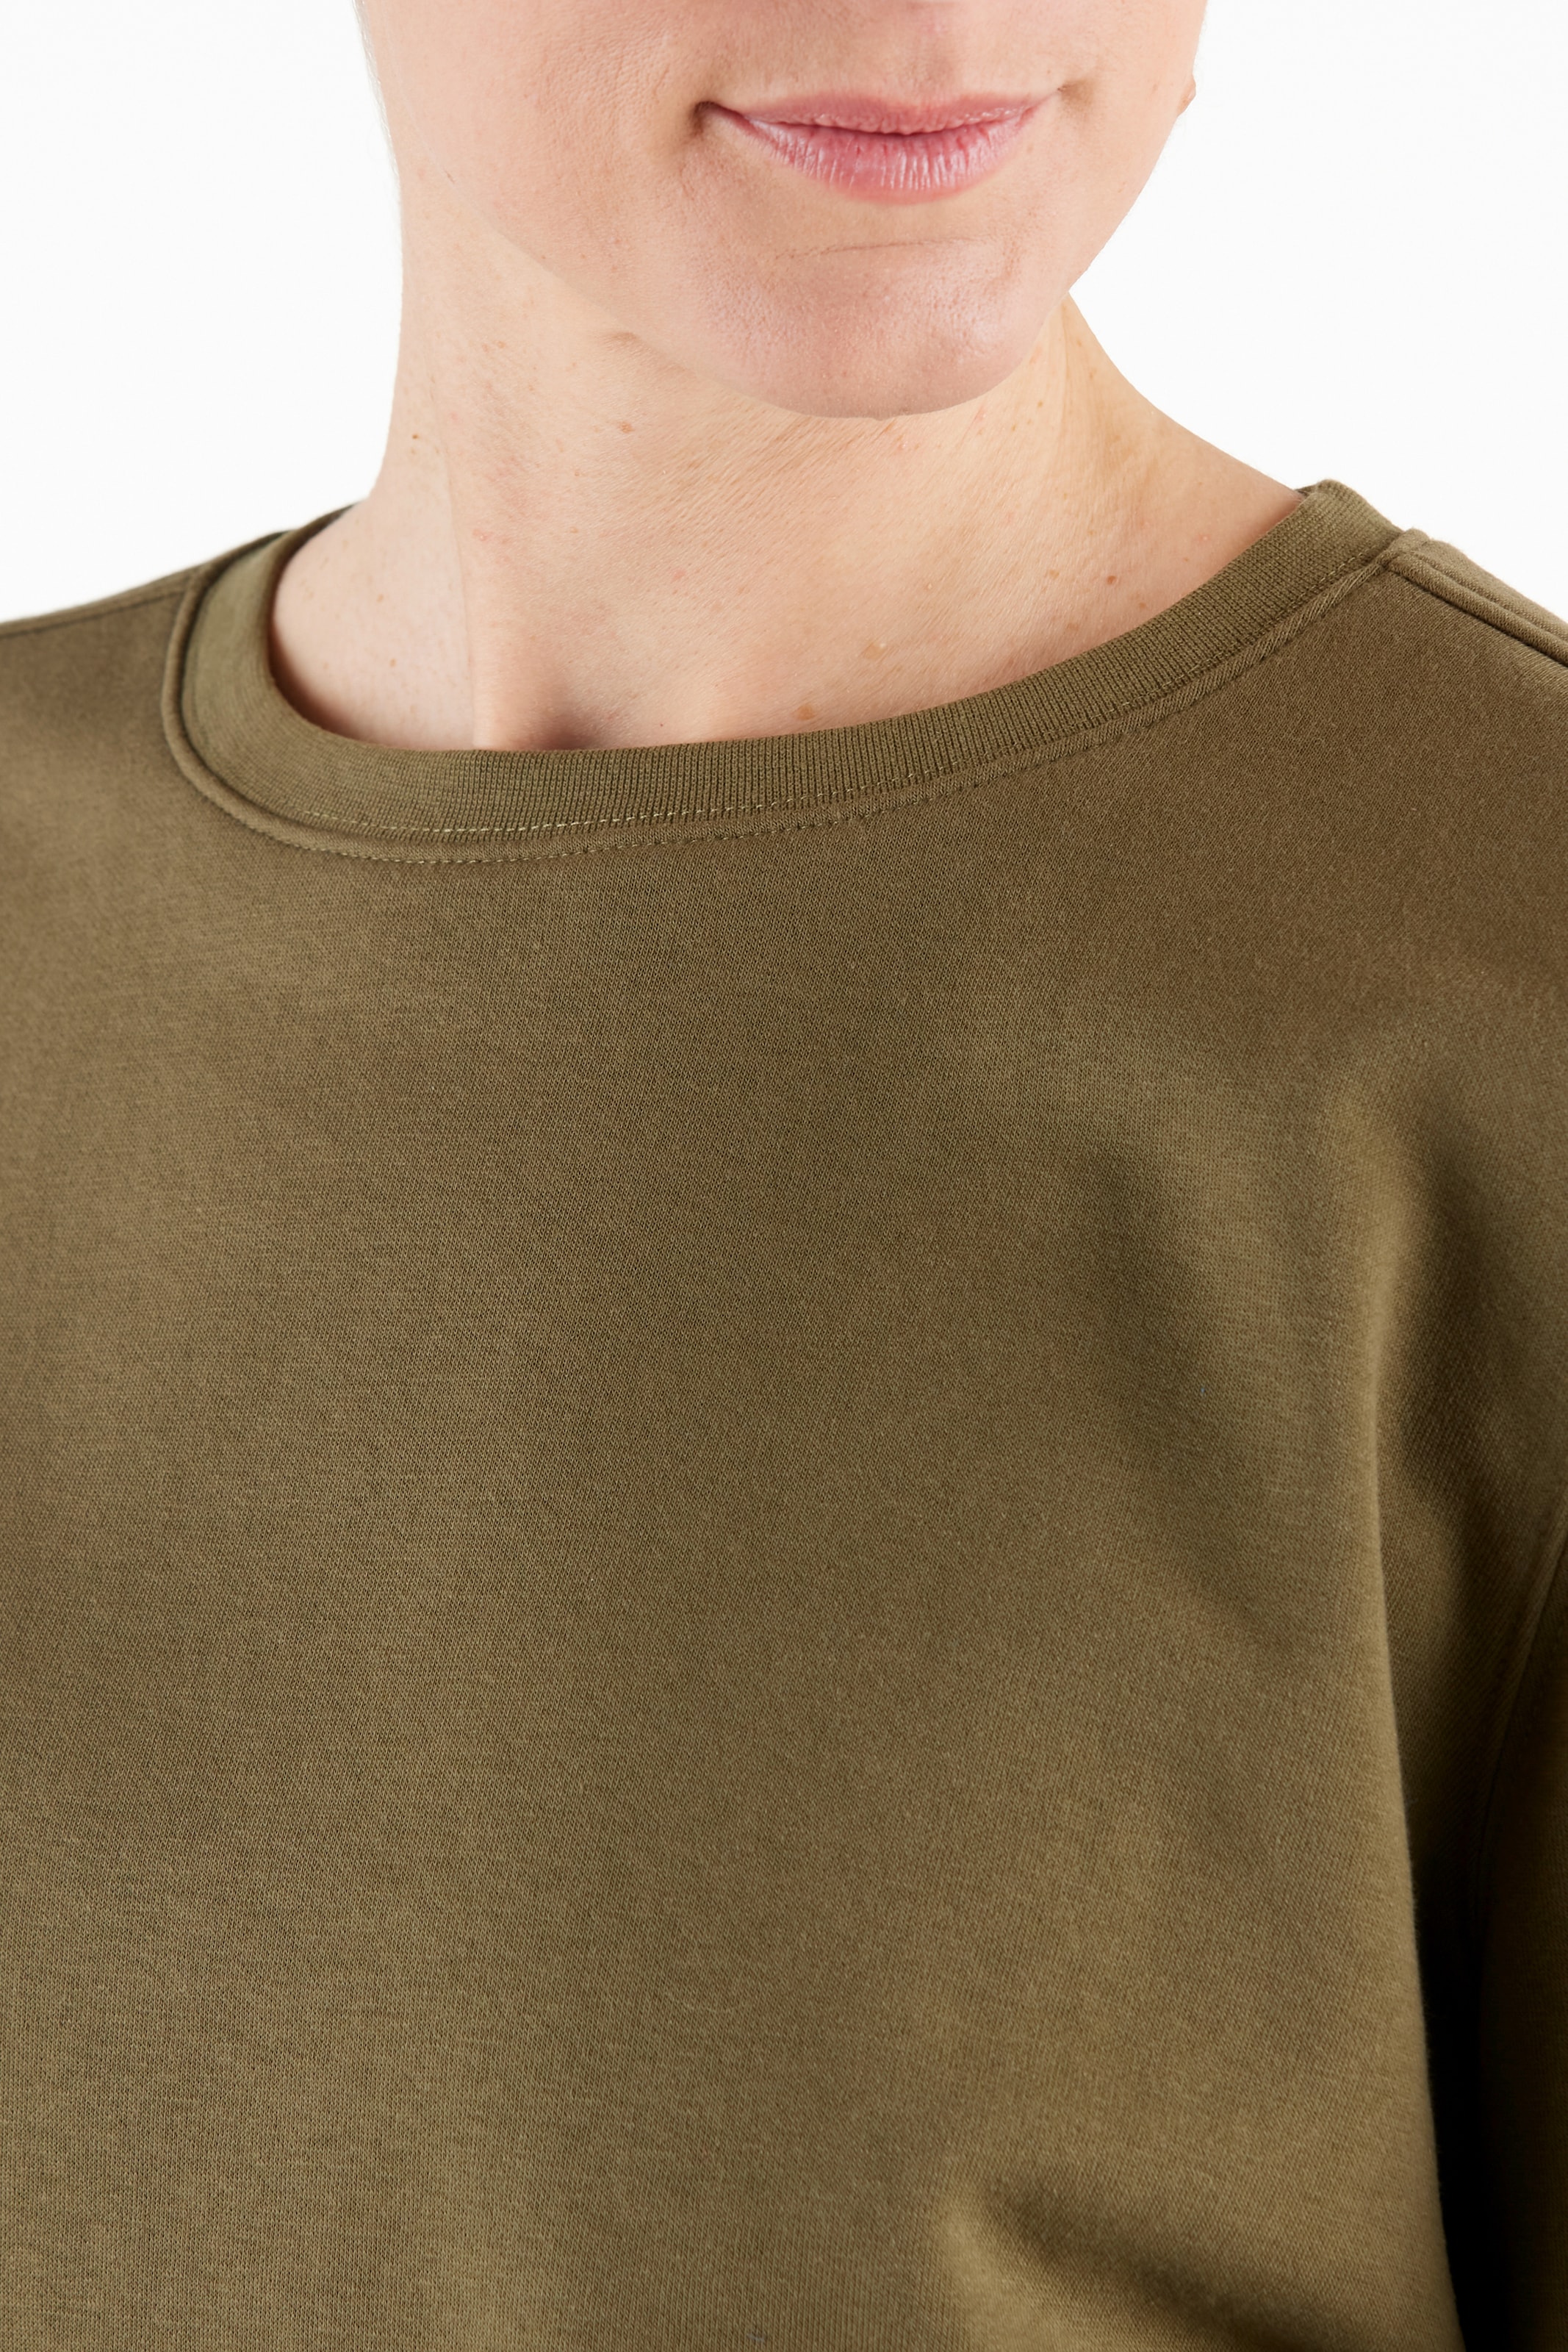 Northern Country Sweatshirt, für Damen aus soften Baumwollmix, trägt sich  locker und leicht bestellen